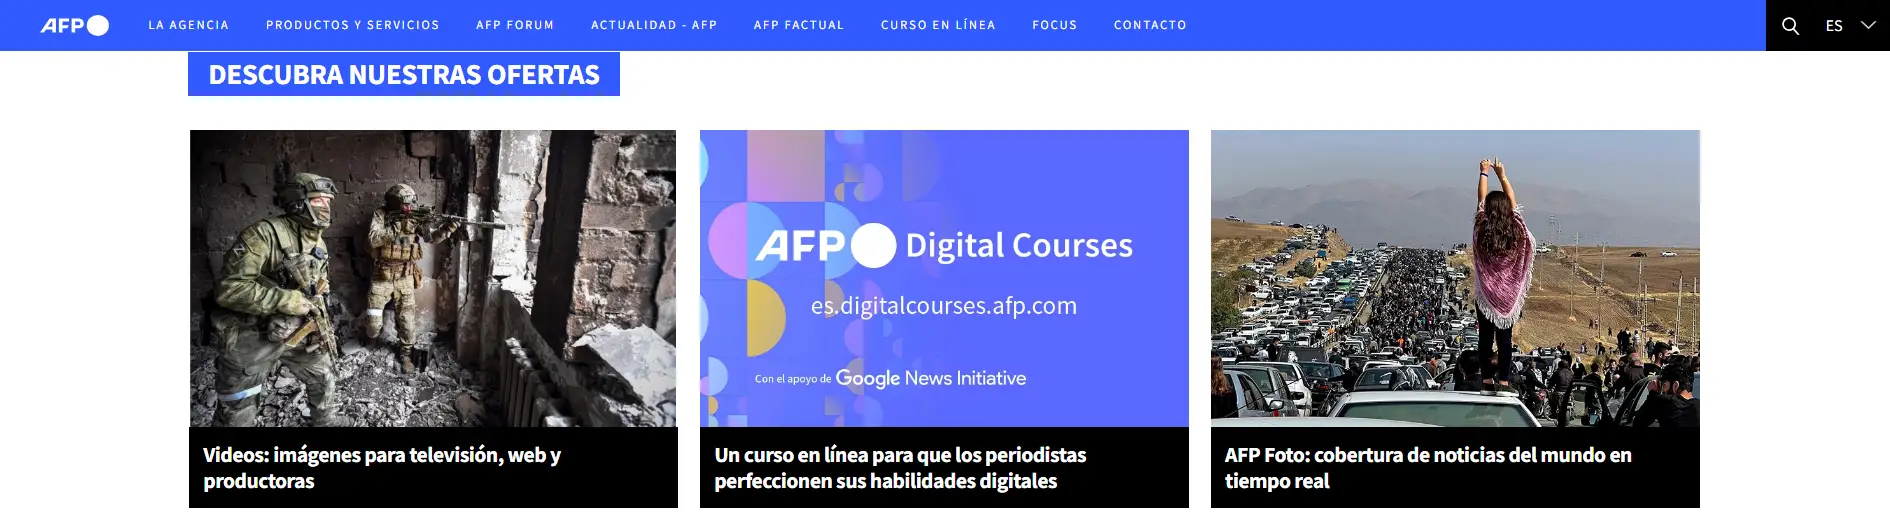 AFP News Información actualizada y cobertura global